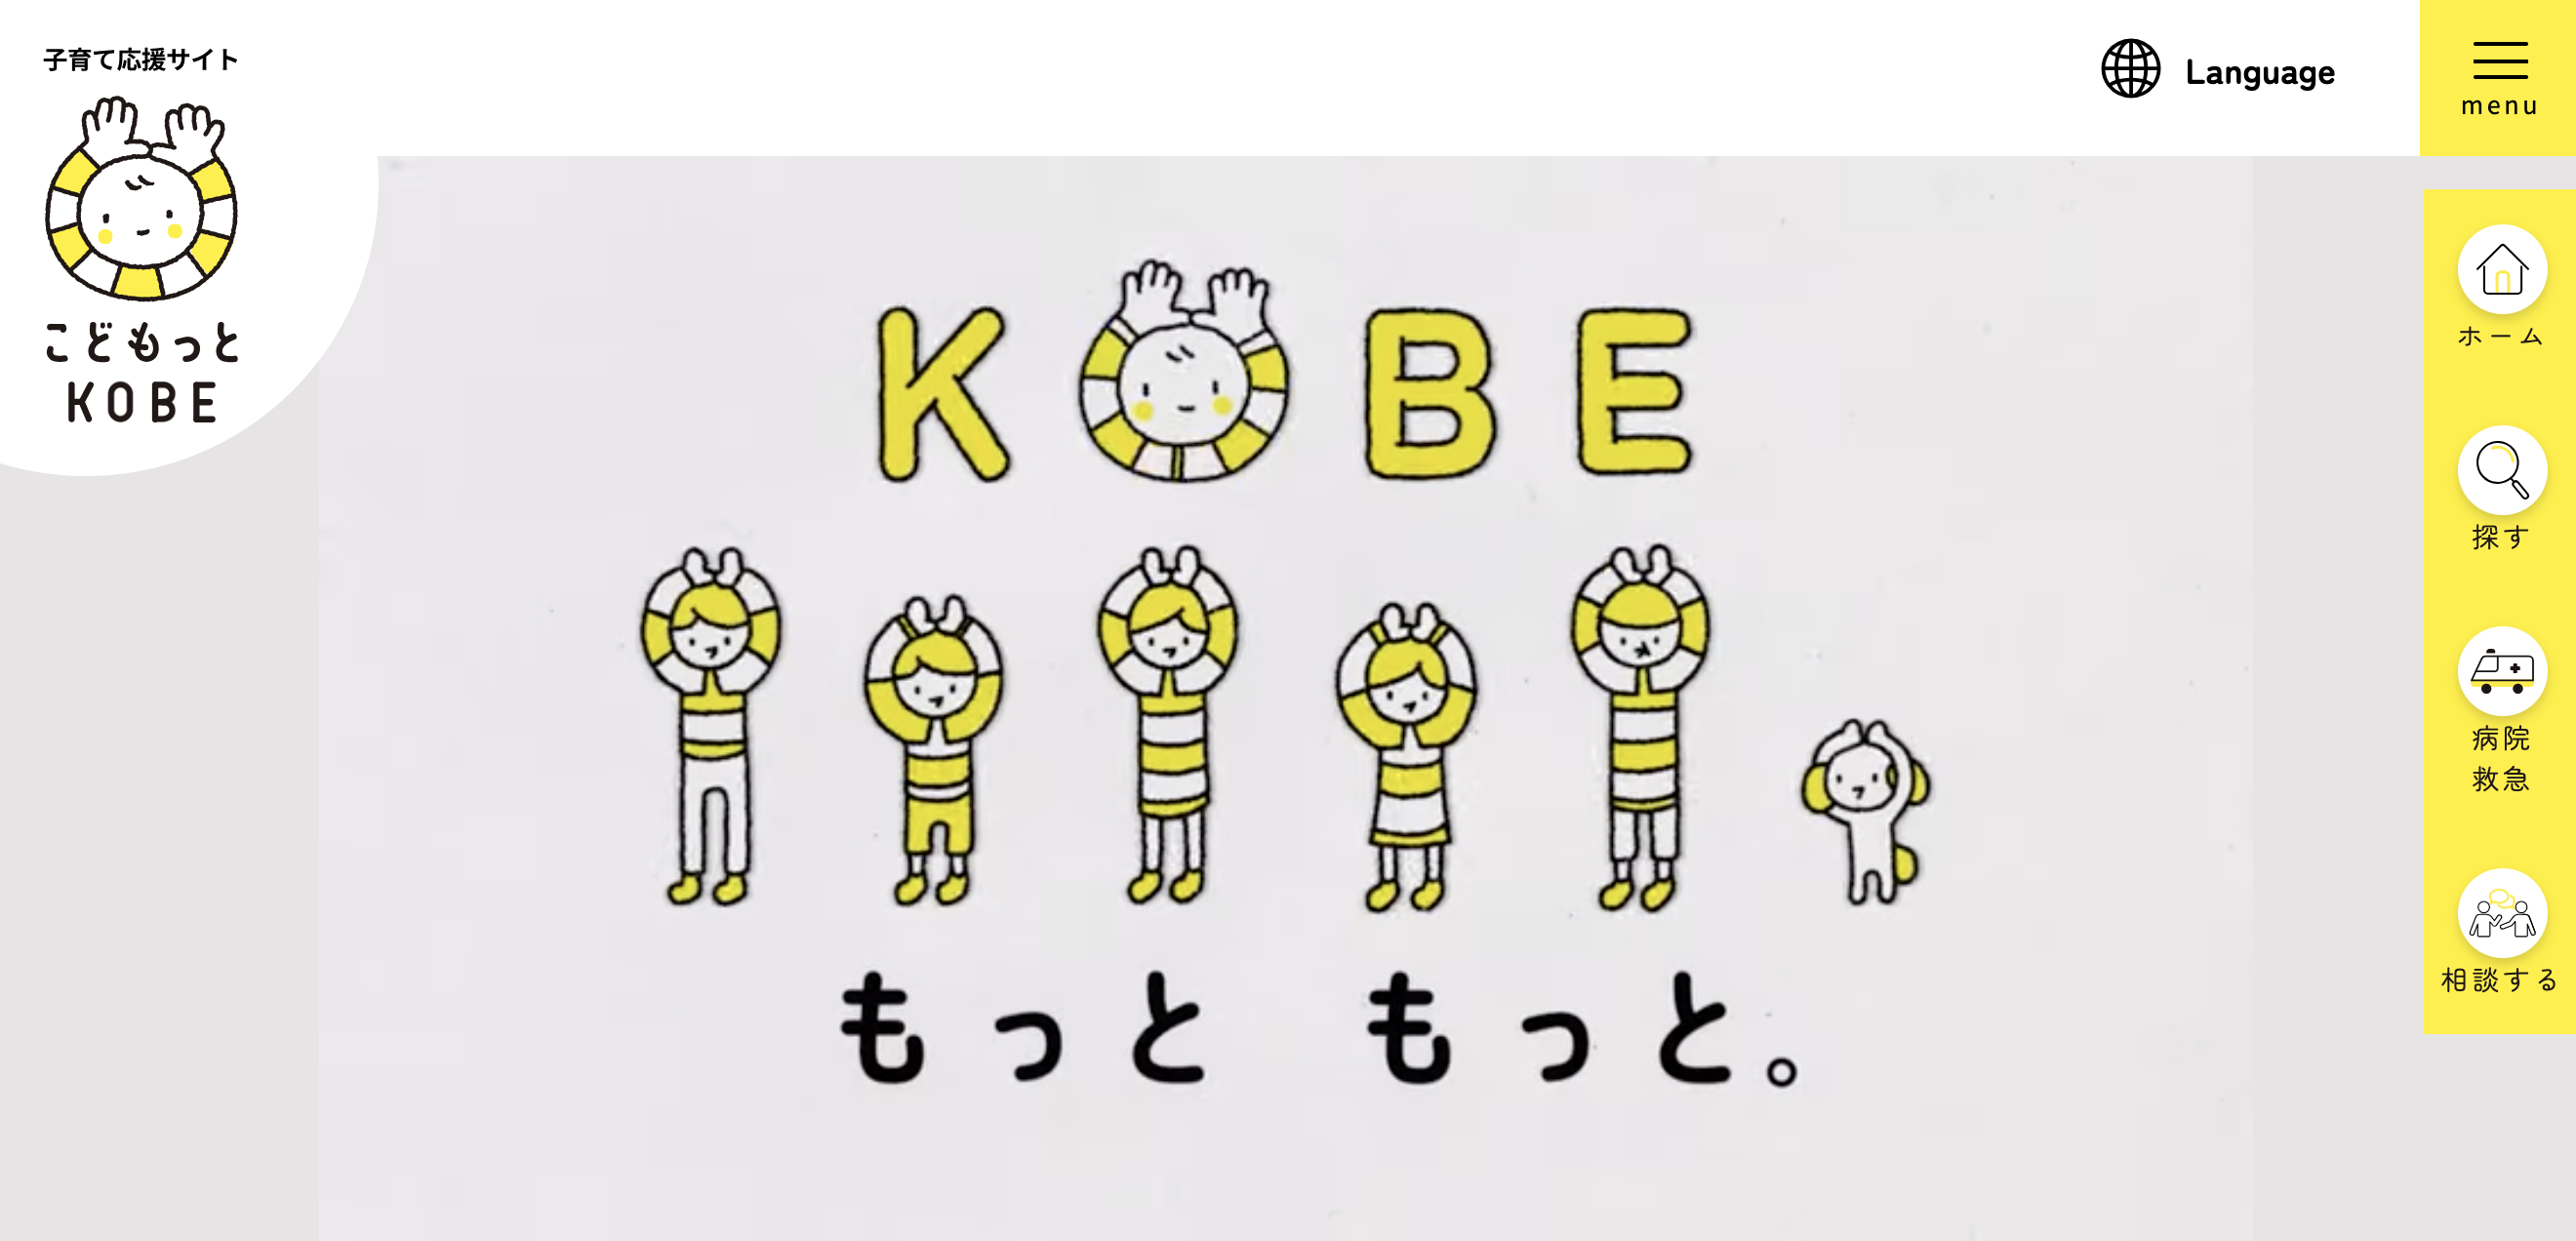 神戸市子育て応援サイト「こどもっとKOBE」記事制作